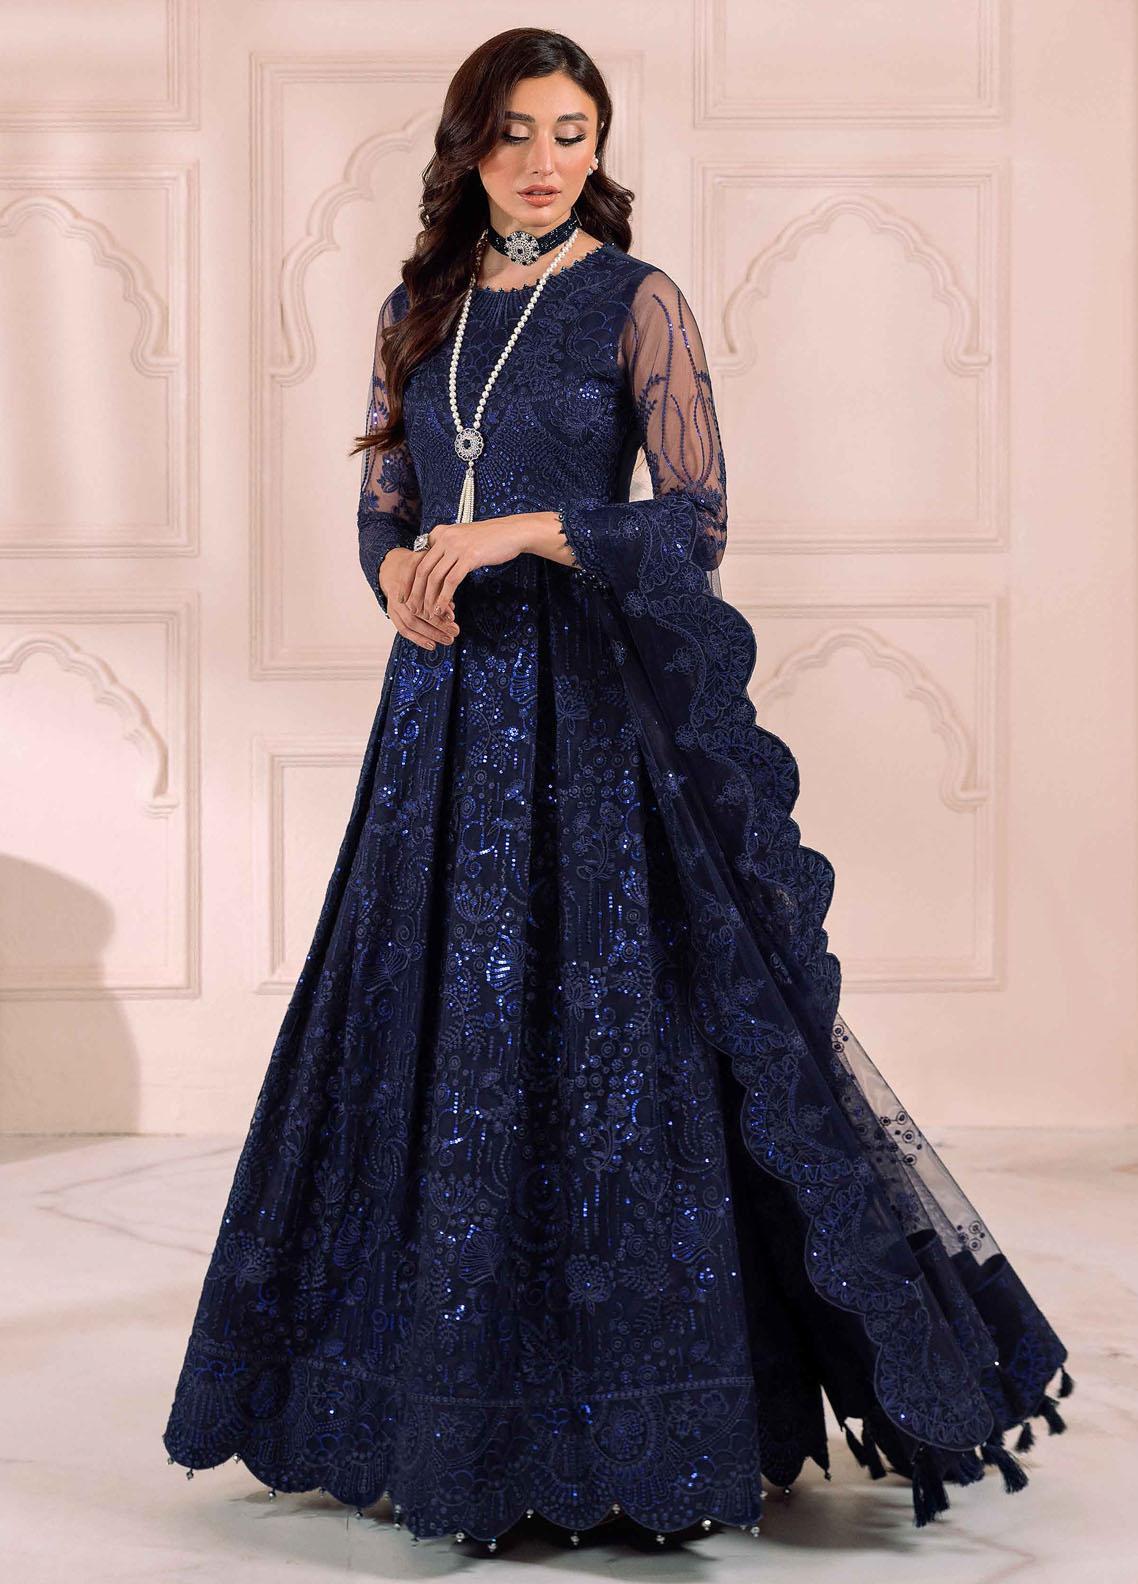 Elizabeth Embroidered Jacquard Dress Blue